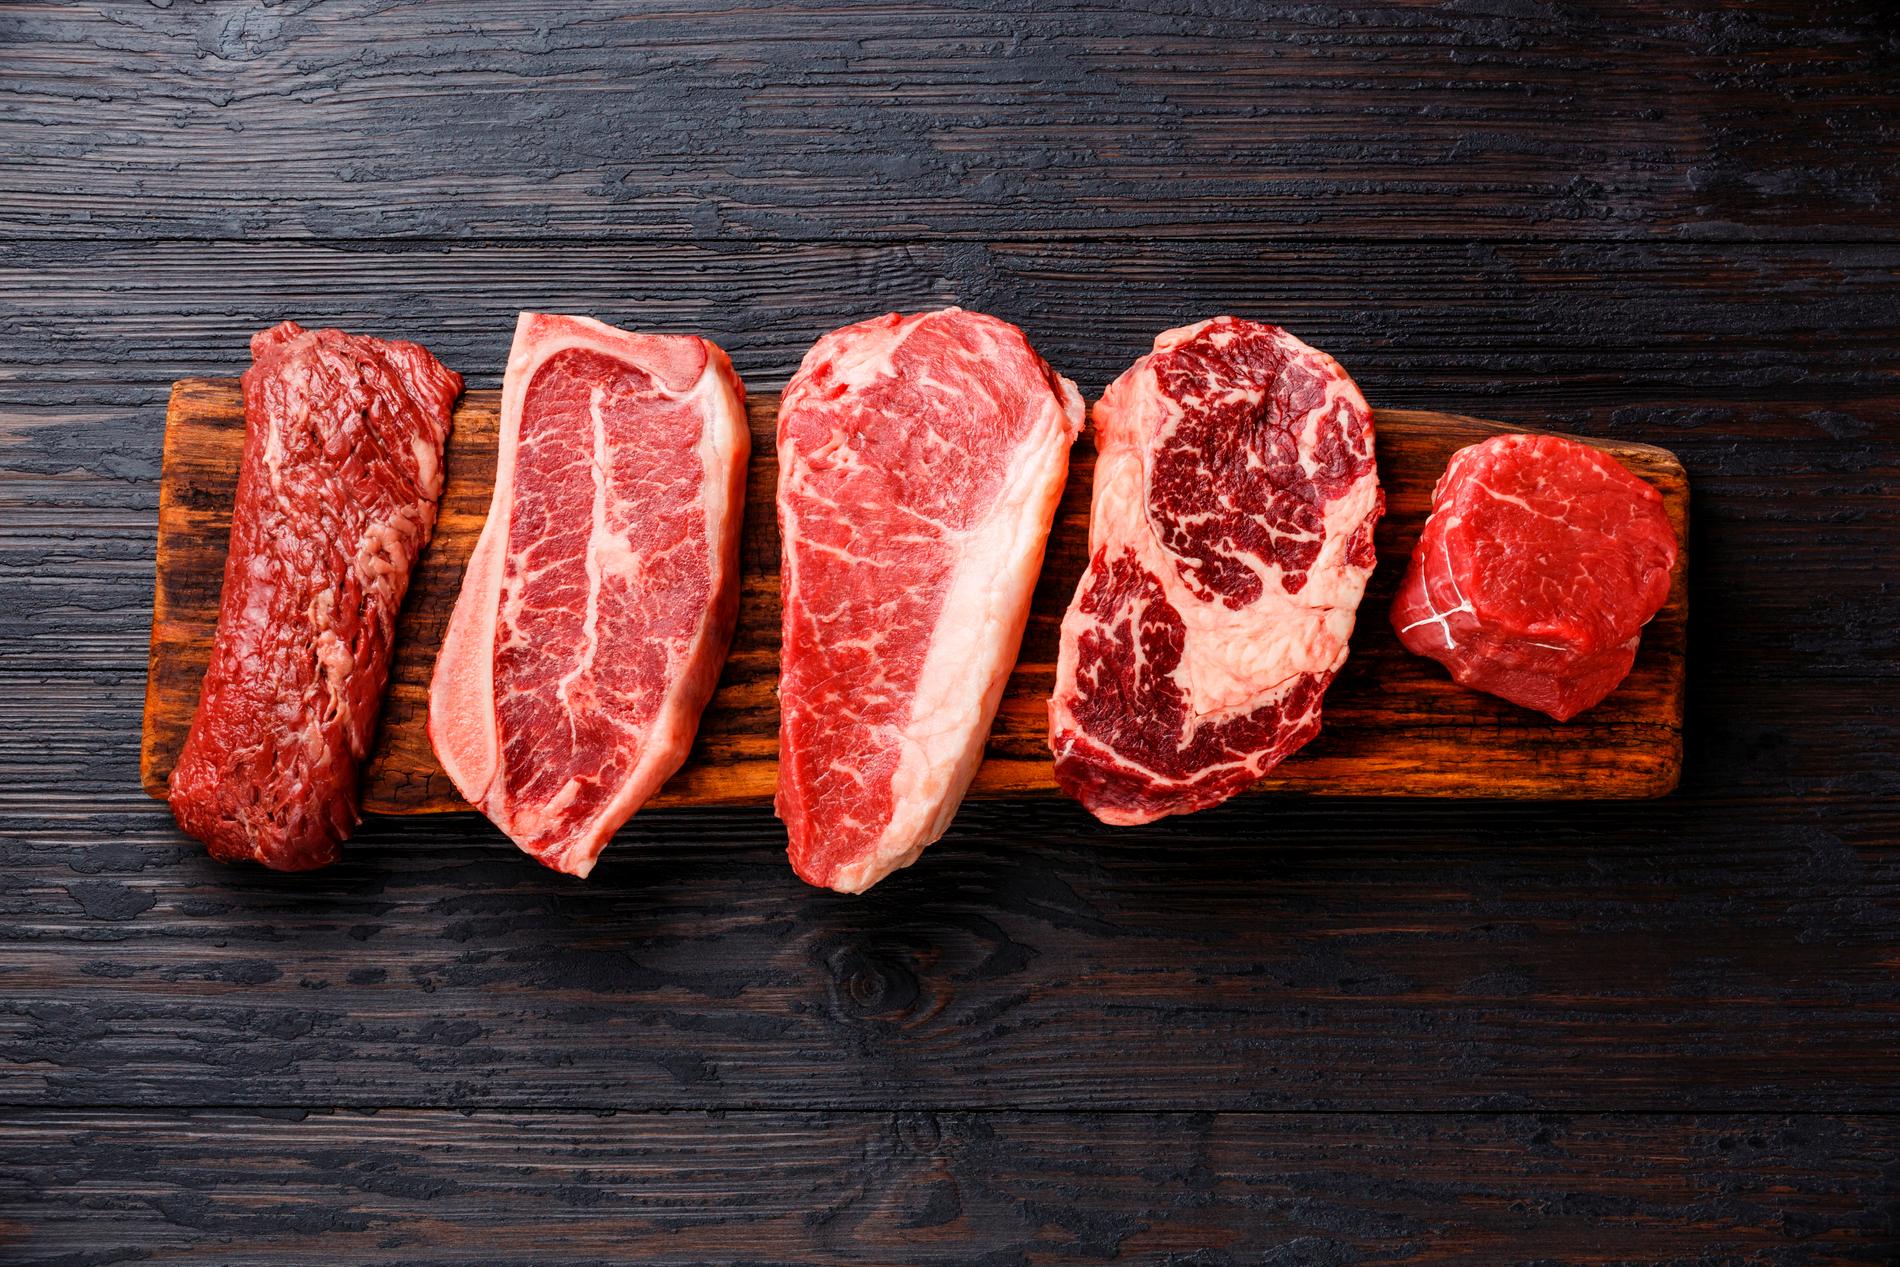 Den som är rädd om hälsan gör klokt i att inte äta för mycket rött kött.